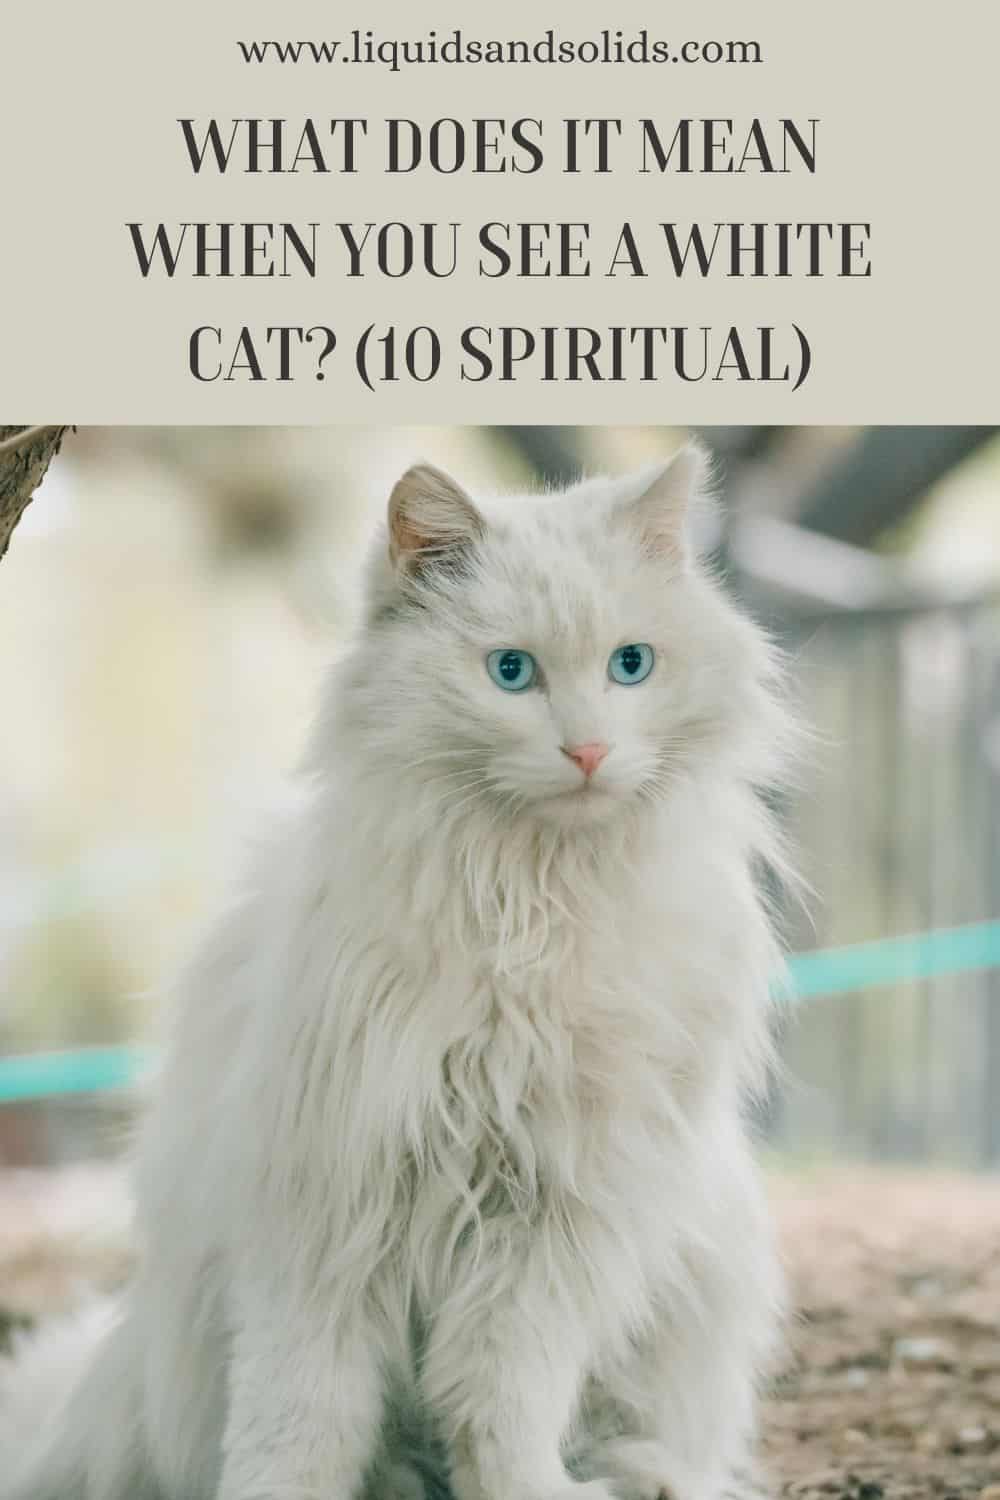  Mida tähendab see, kui sa näed valget kassi? (10 vaimset tähendust)